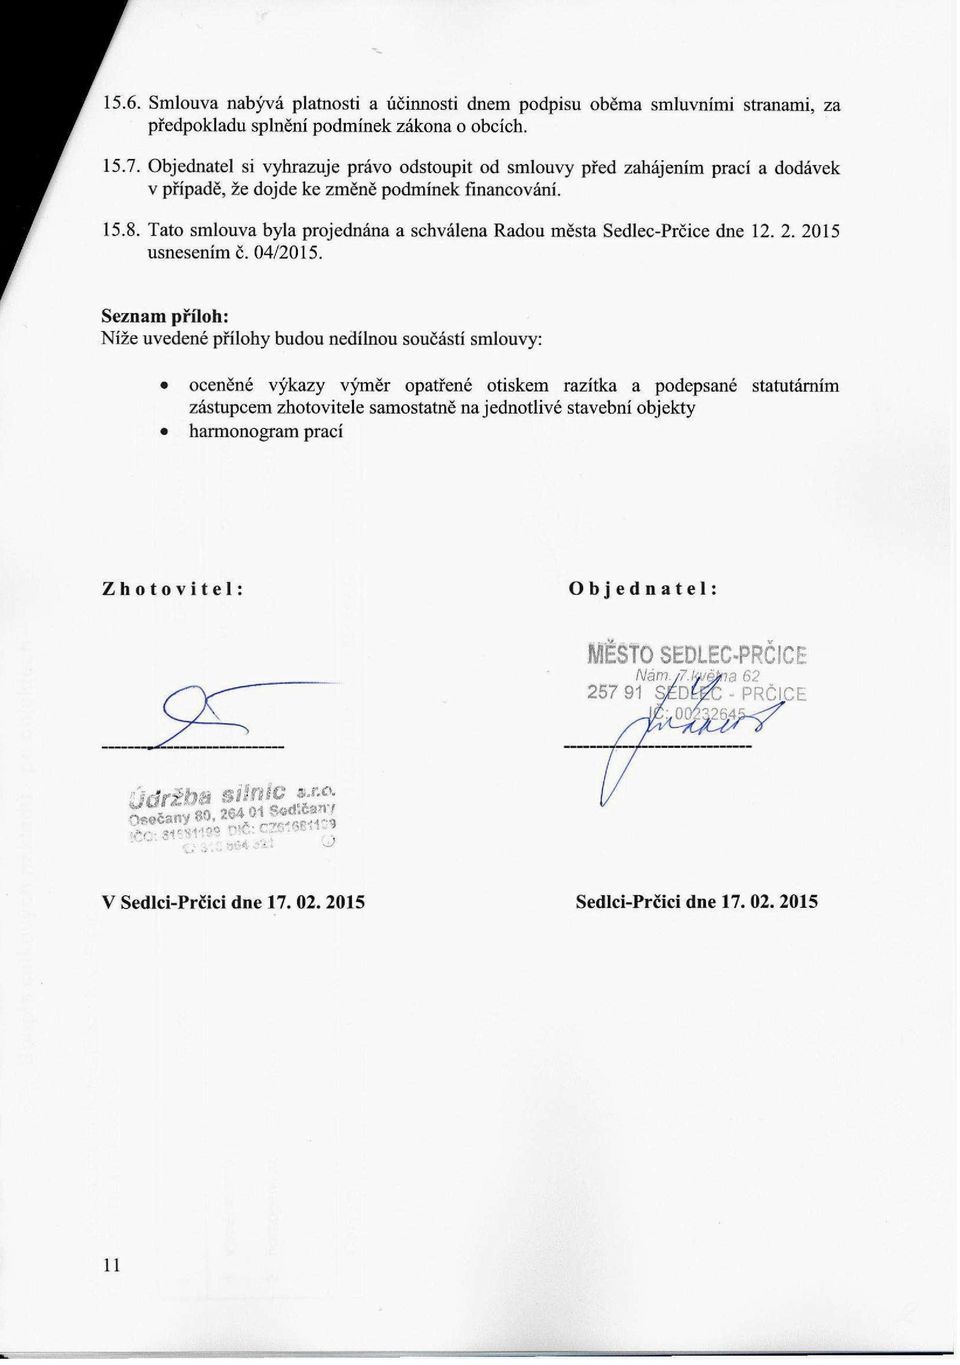 Tato smlouva byla projednána a schválena Radou města Sedlec-Prčice dne 12. 2. 2015 usnesením č. 04/2015.